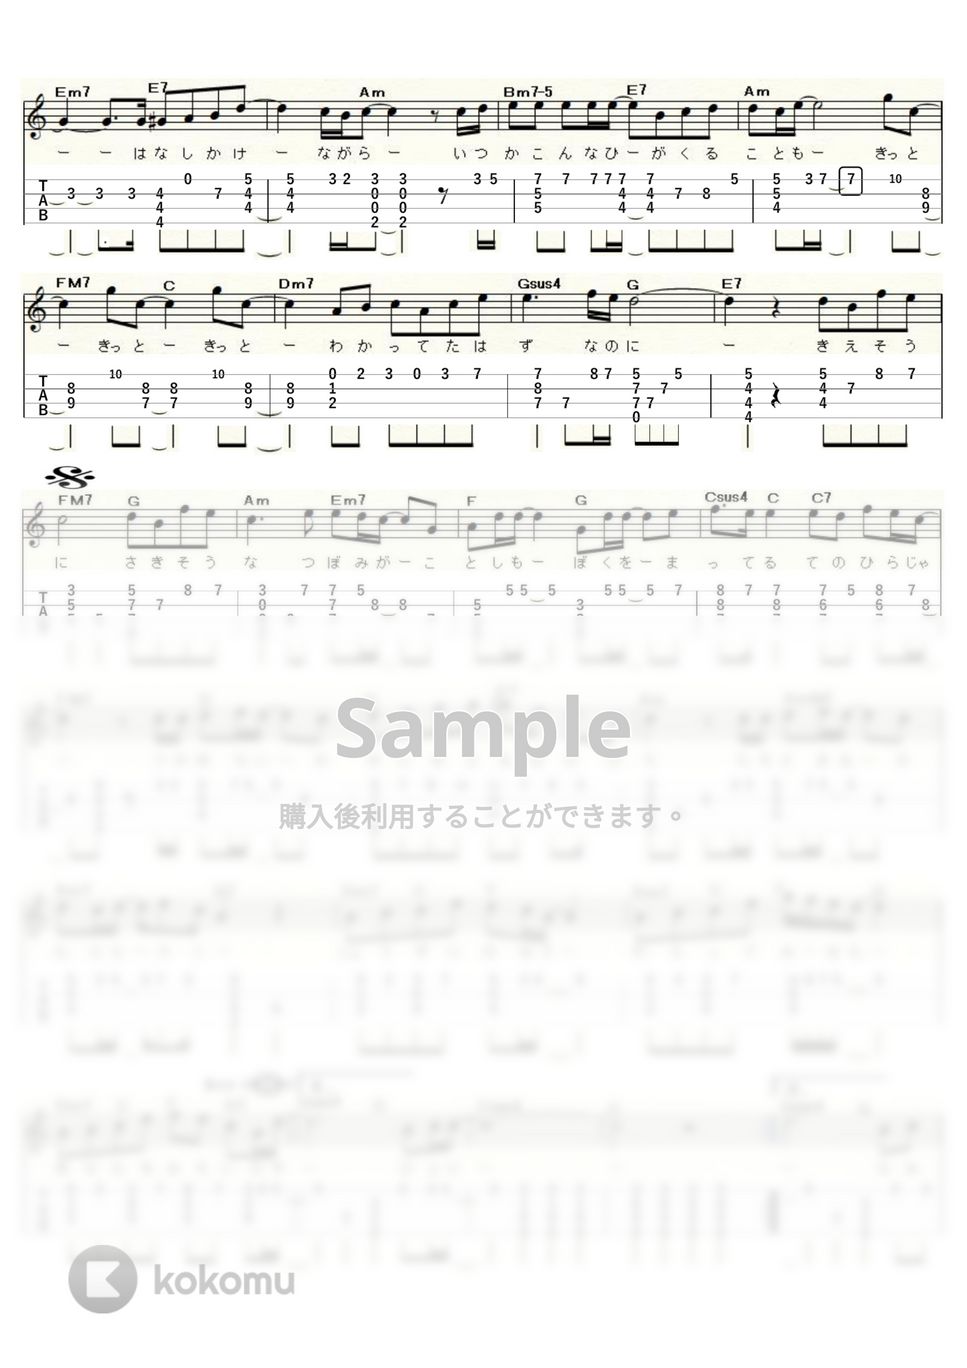 コブクロ - 蕾-つぼみ- (ｳｸﾚﾚｿﾛ / Low-G / 上級) by ukulelepapa